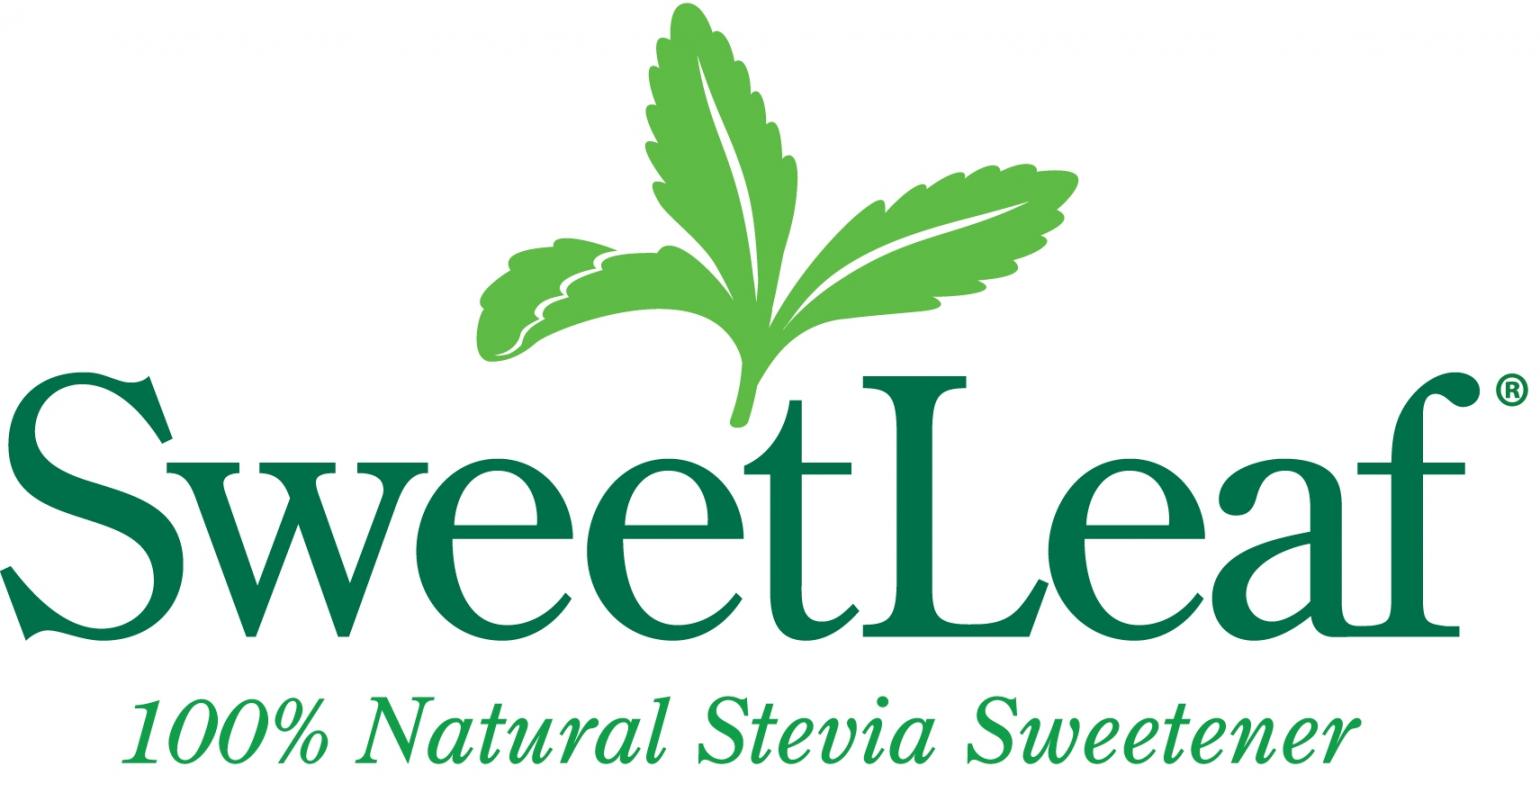 COMBO Đường ăn kiêng cỏ ngọt Hộp 70 gói + Lọ 115g / Sweetleaf stevia sweetener tự nhiên - 0 Calories - Xuất xứ Mỹ